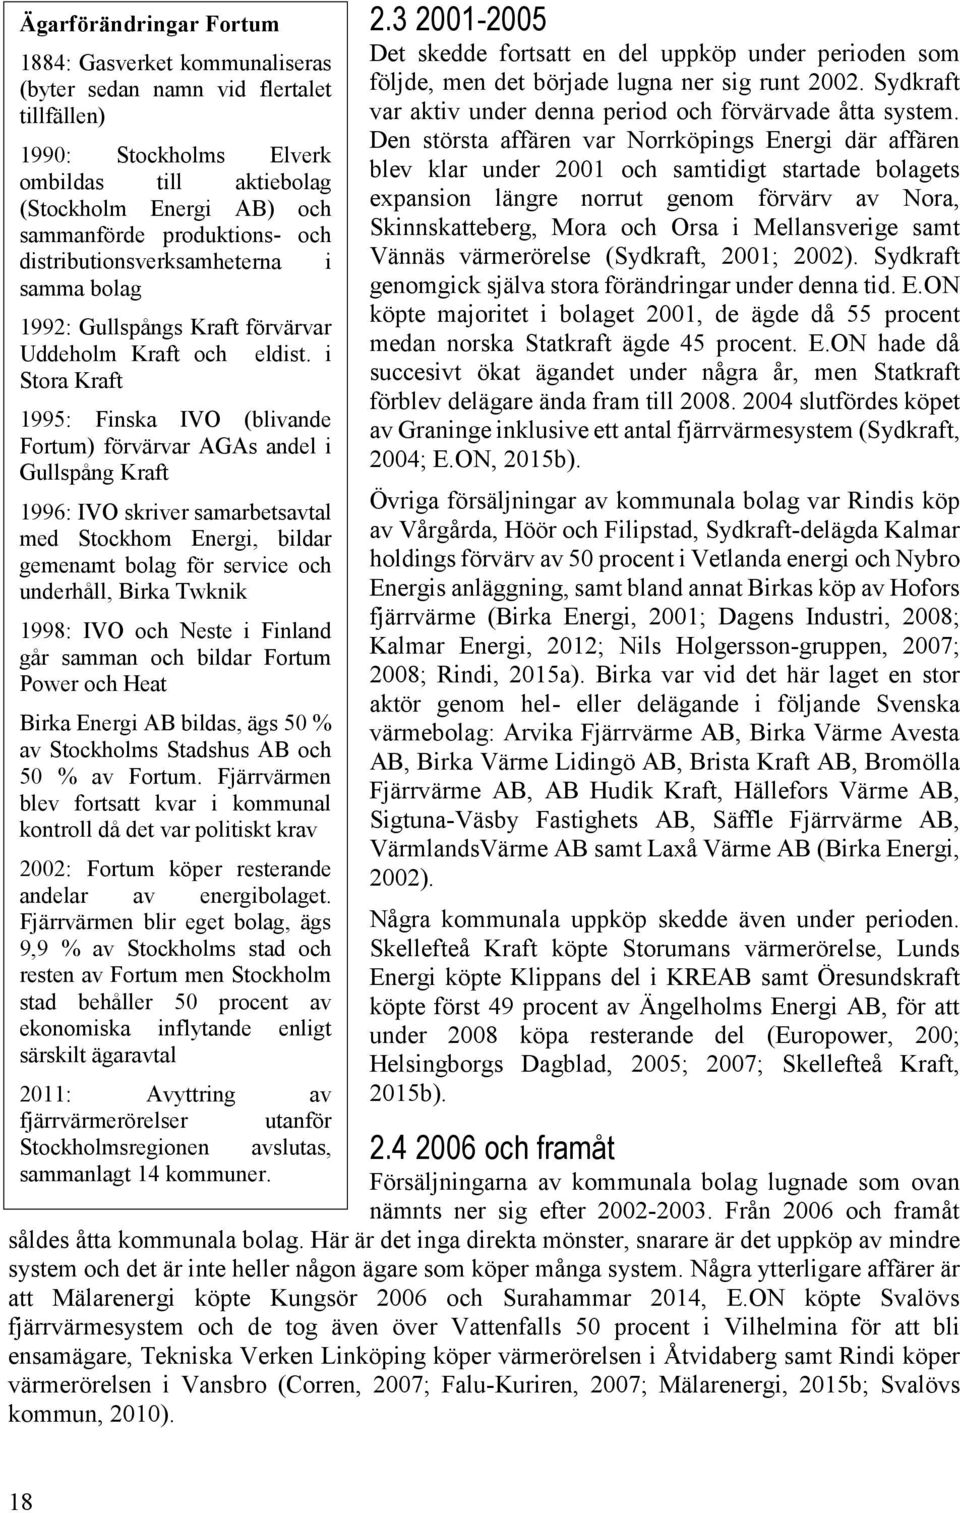 i Stora Kraft 1995: Finska IVO (blivande Fortum) förvärvar AGAs andel i Gullspång Kraft 1996: IVO skriver samarbetsavtal med Stockhom Energi, bildar gemenamt bolag för service och underhåll, Birka